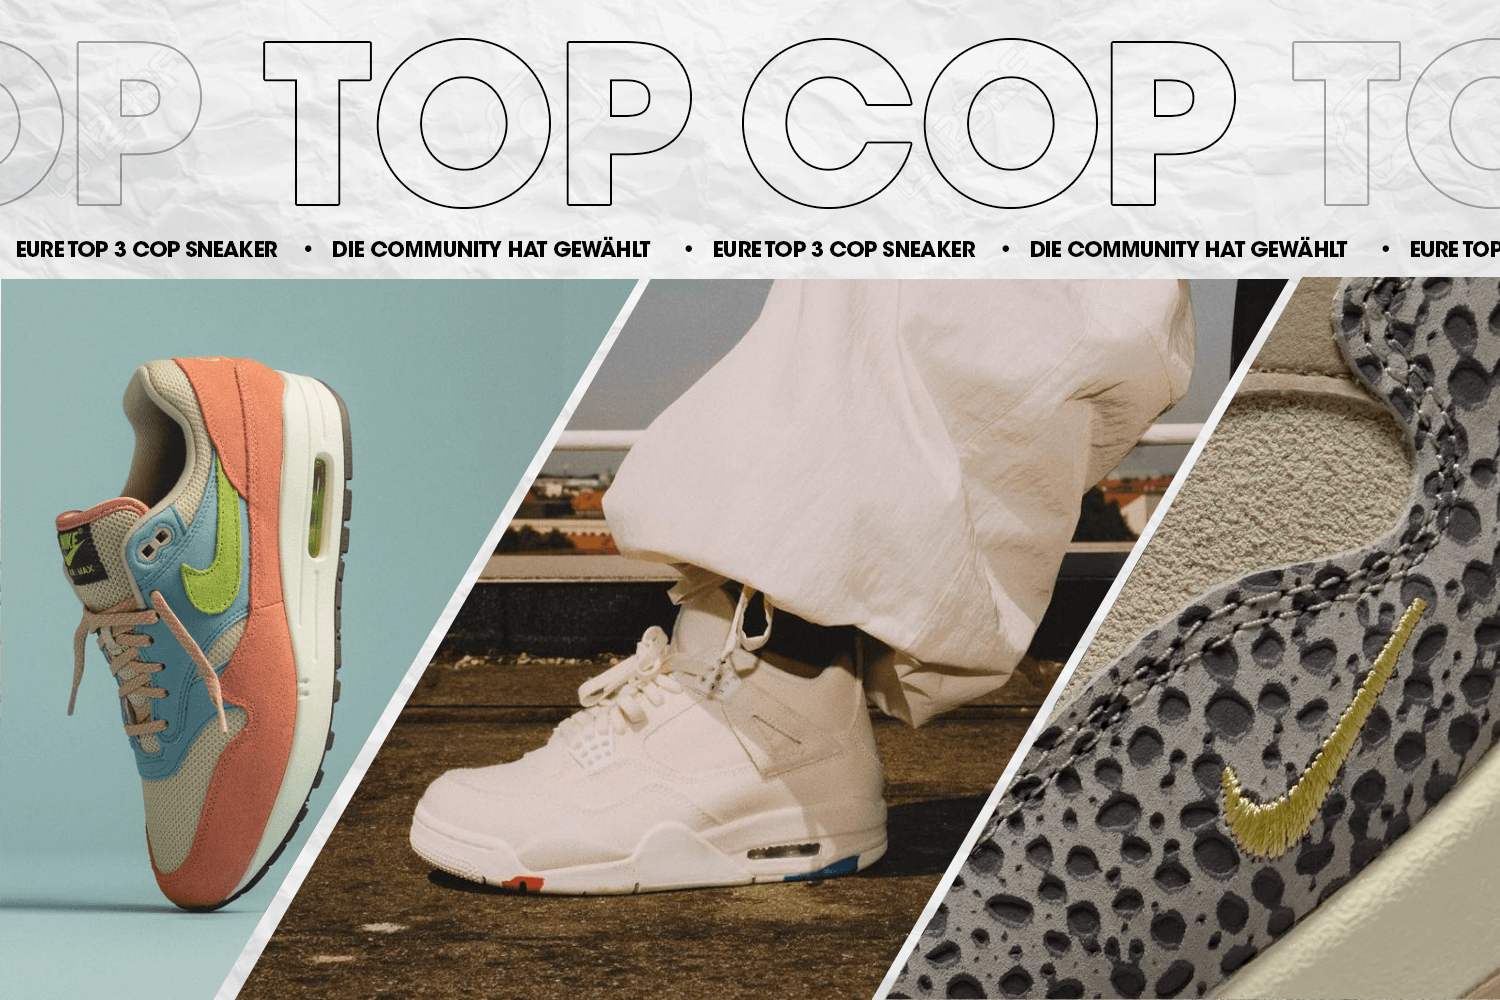 Die Community hat gewählt: Eure Top 3 Cop Sneaker Woche 24